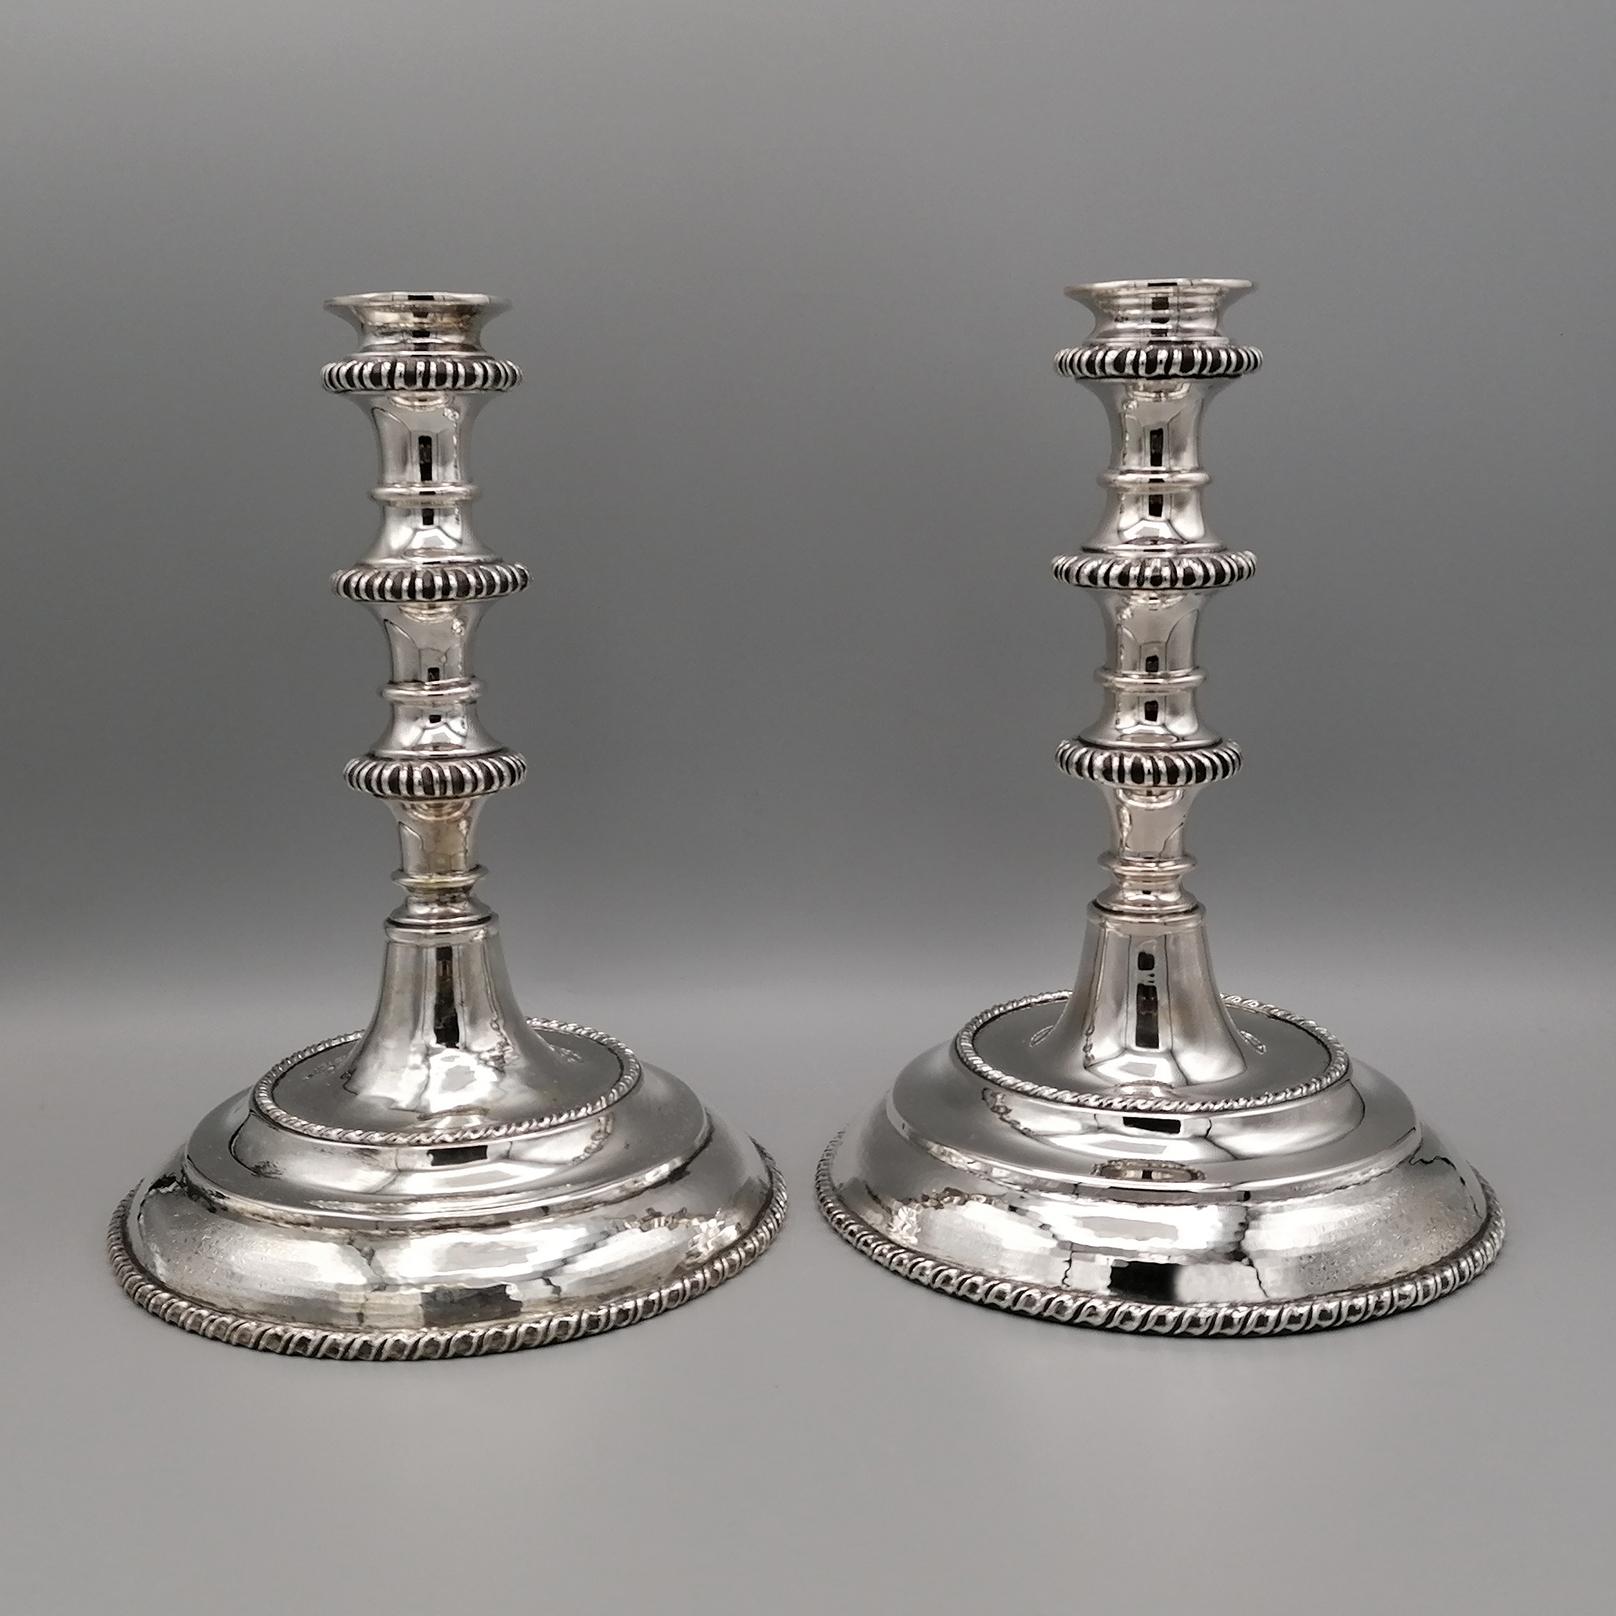 Ein Paar Kerzenständer aus massivem Silber, hergestellt in Italien im San Marco (venezianischen) Stil, komplett handgefertigt.
Der Sockel ist rund und handgehämmert mit
zwei mit San Marco eingefasste Kanten.
Der Stiel ist mit einem dreifachen Rand